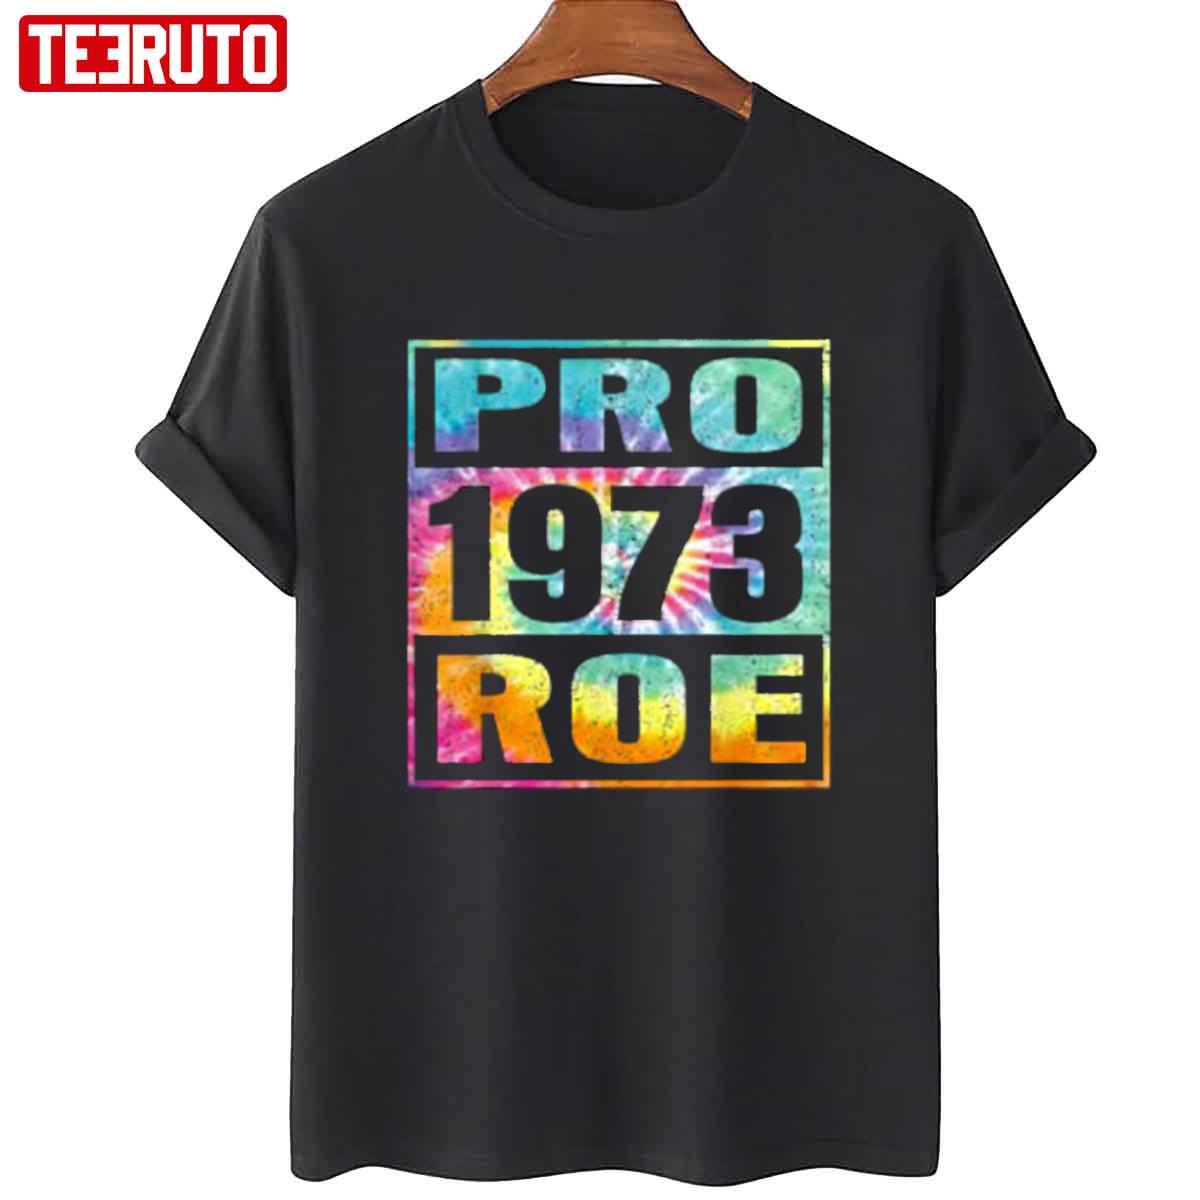 Tie Dye Pro Roe 1973 Pro Choice Women's Rights Unisex T-Shirt